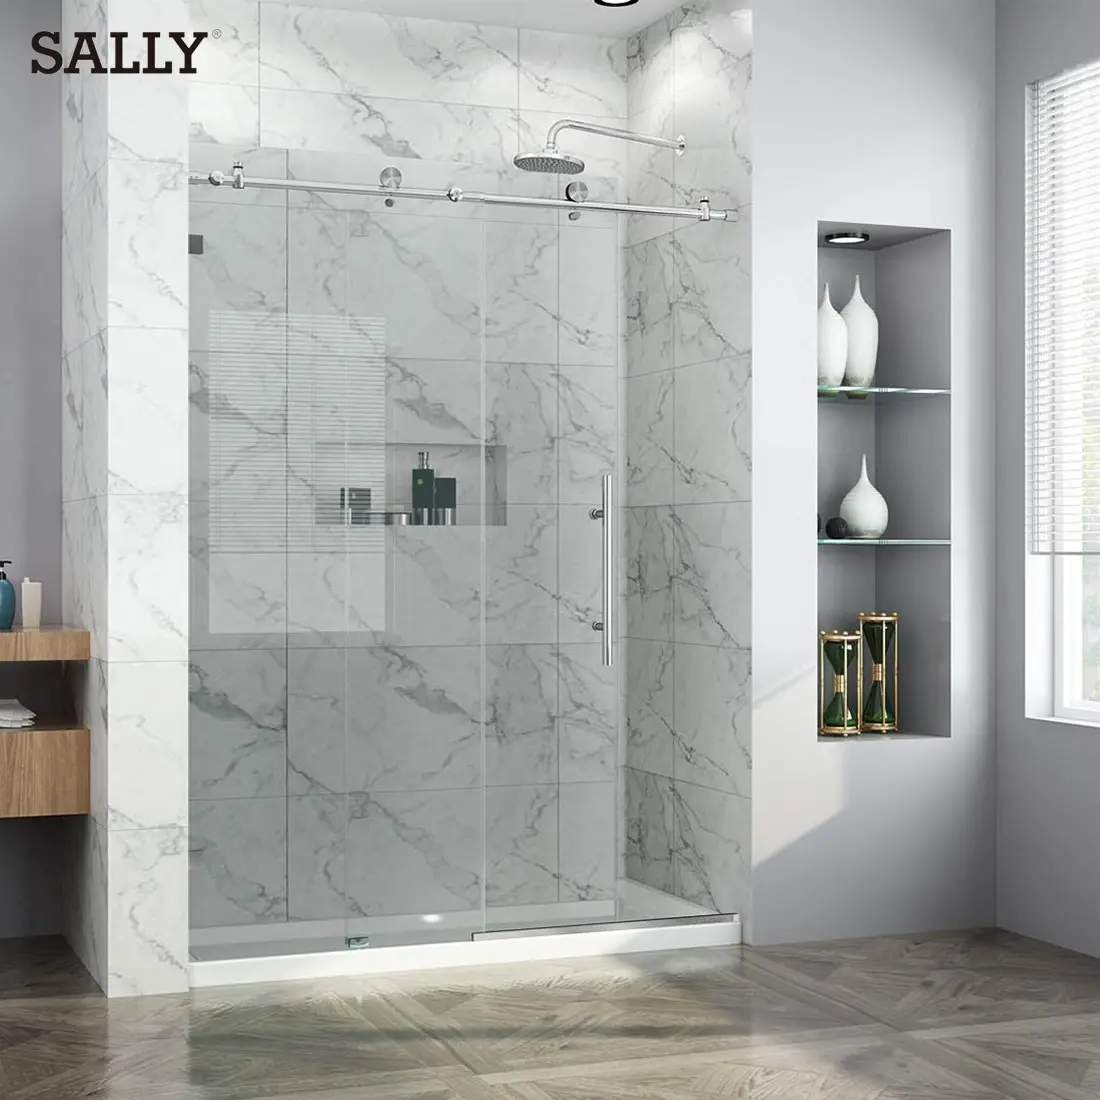 Салли из закаленного стекла двери ливня прямоугольное 10 мм раздвижная душевая дверная фурнитура Ванна Душ со стеклянной дверью для ванной комнаты